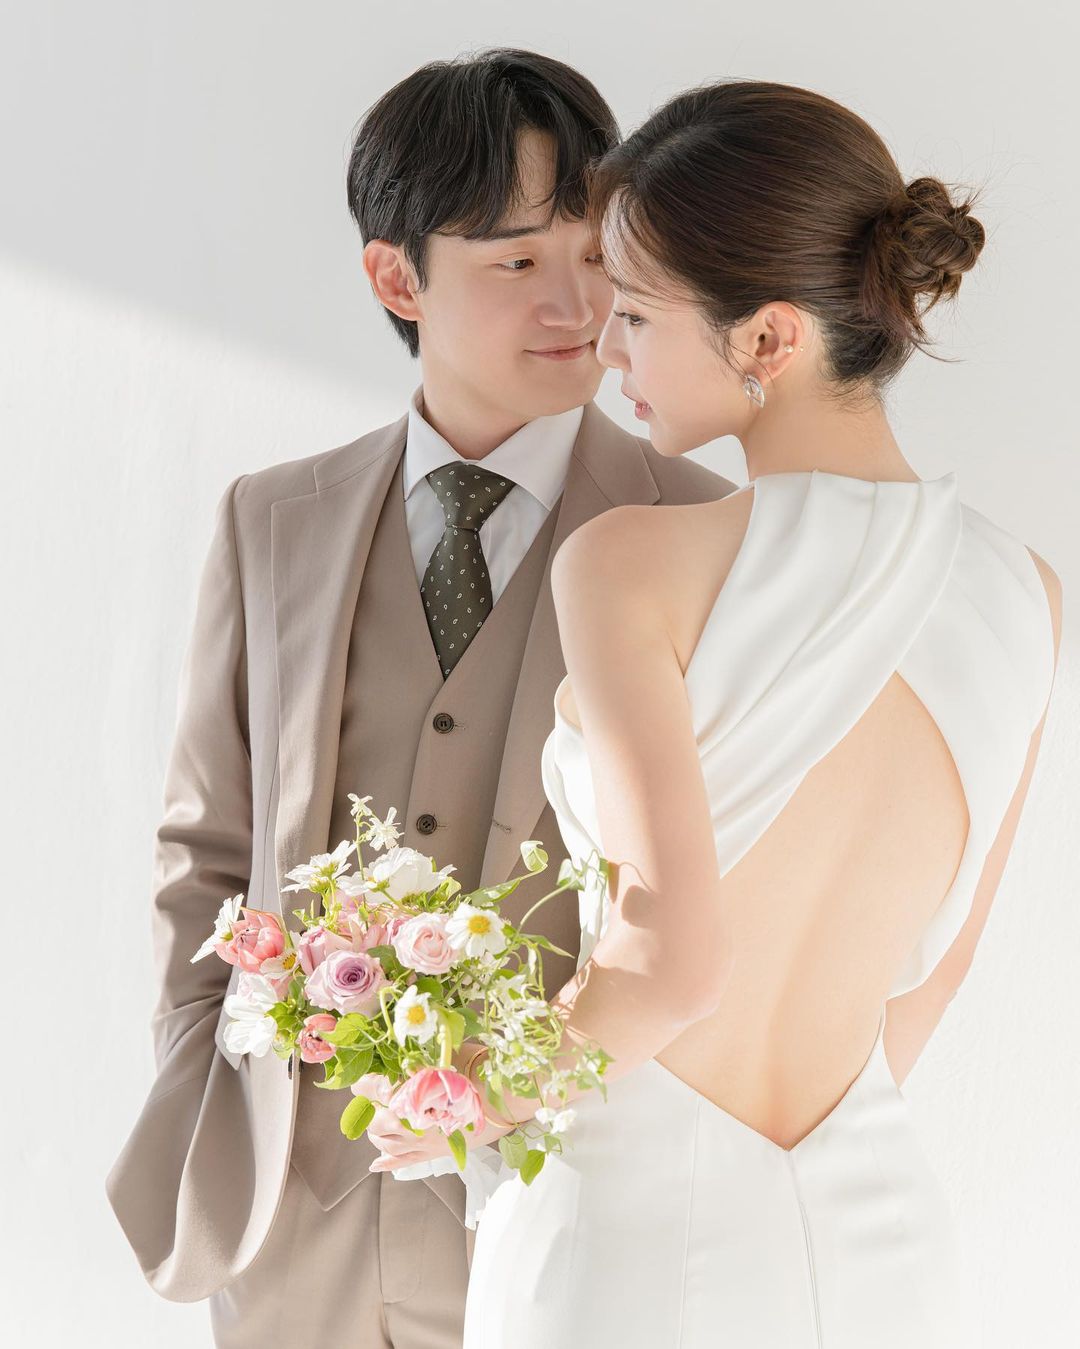 Автор вебтуна "Истинная красота" выходит замуж + делится великолепными свадебными фотографиями